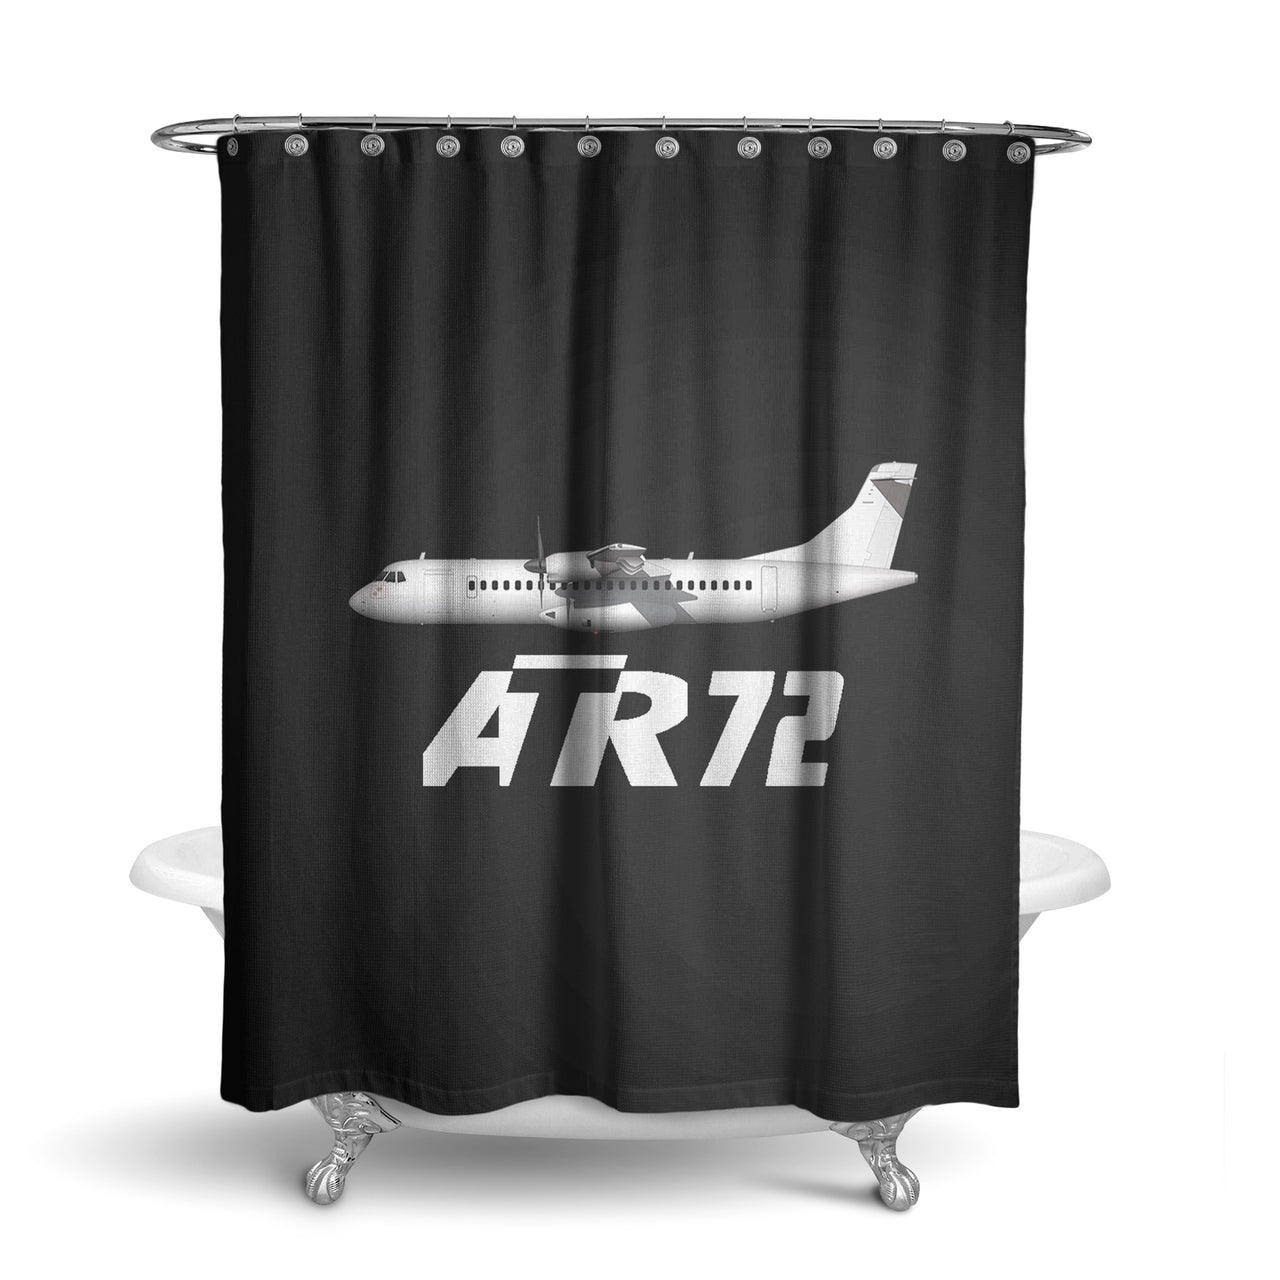 The ATR72 Designed Shower Curtains